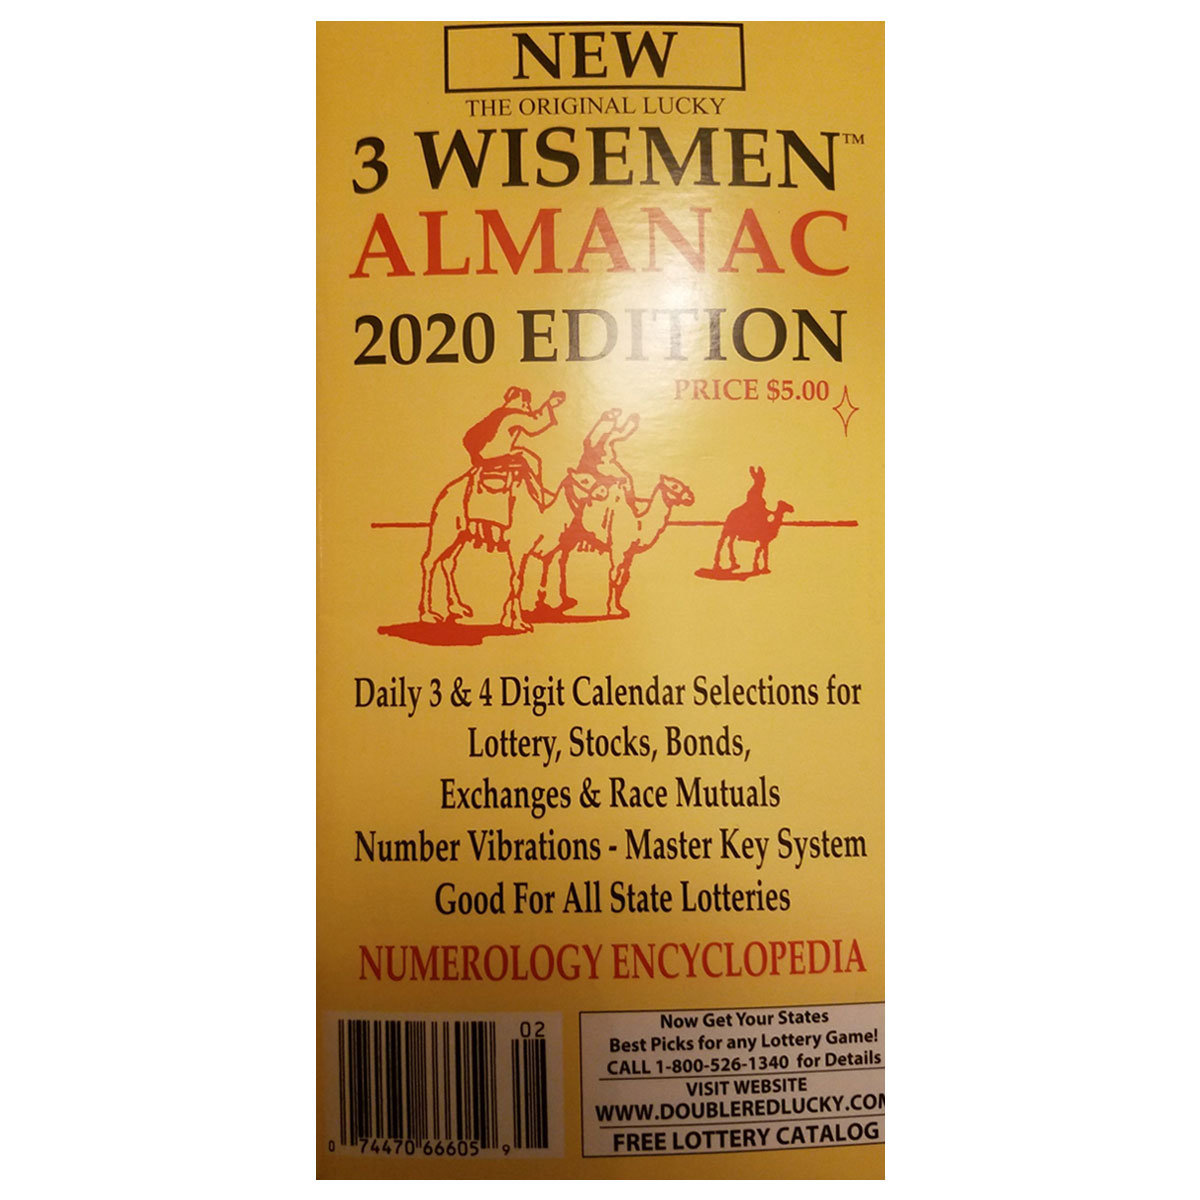 The Original 3 Wisemen Almanac